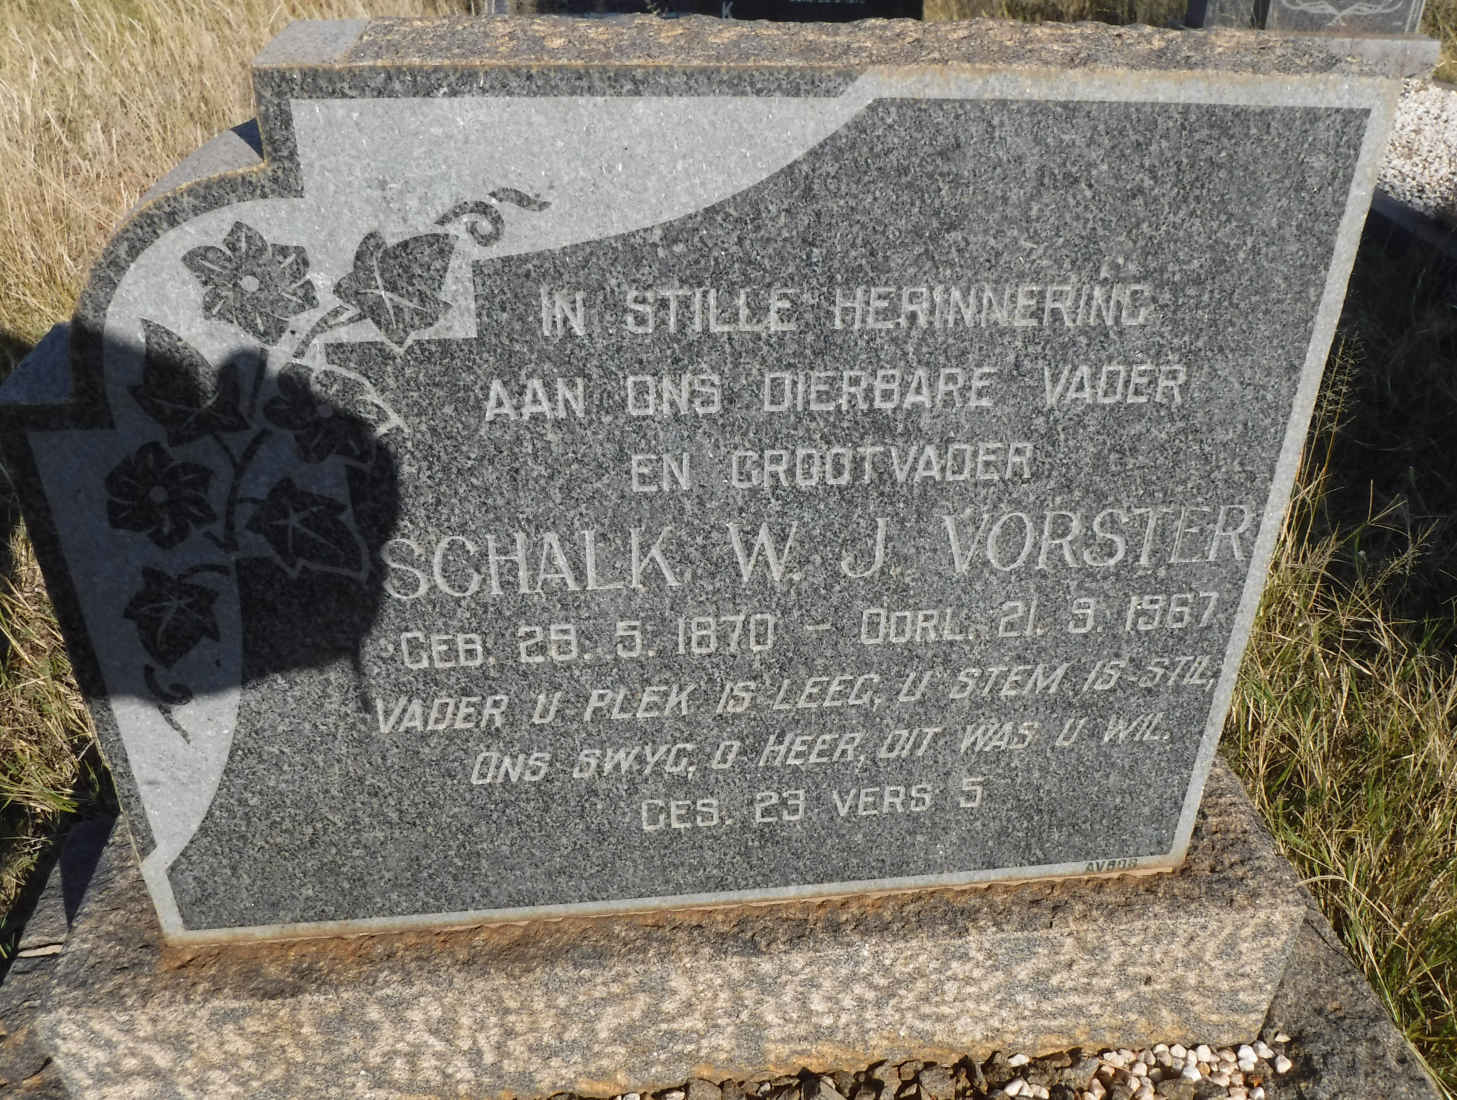 VORSTER Schalk W.J. 1870-1967